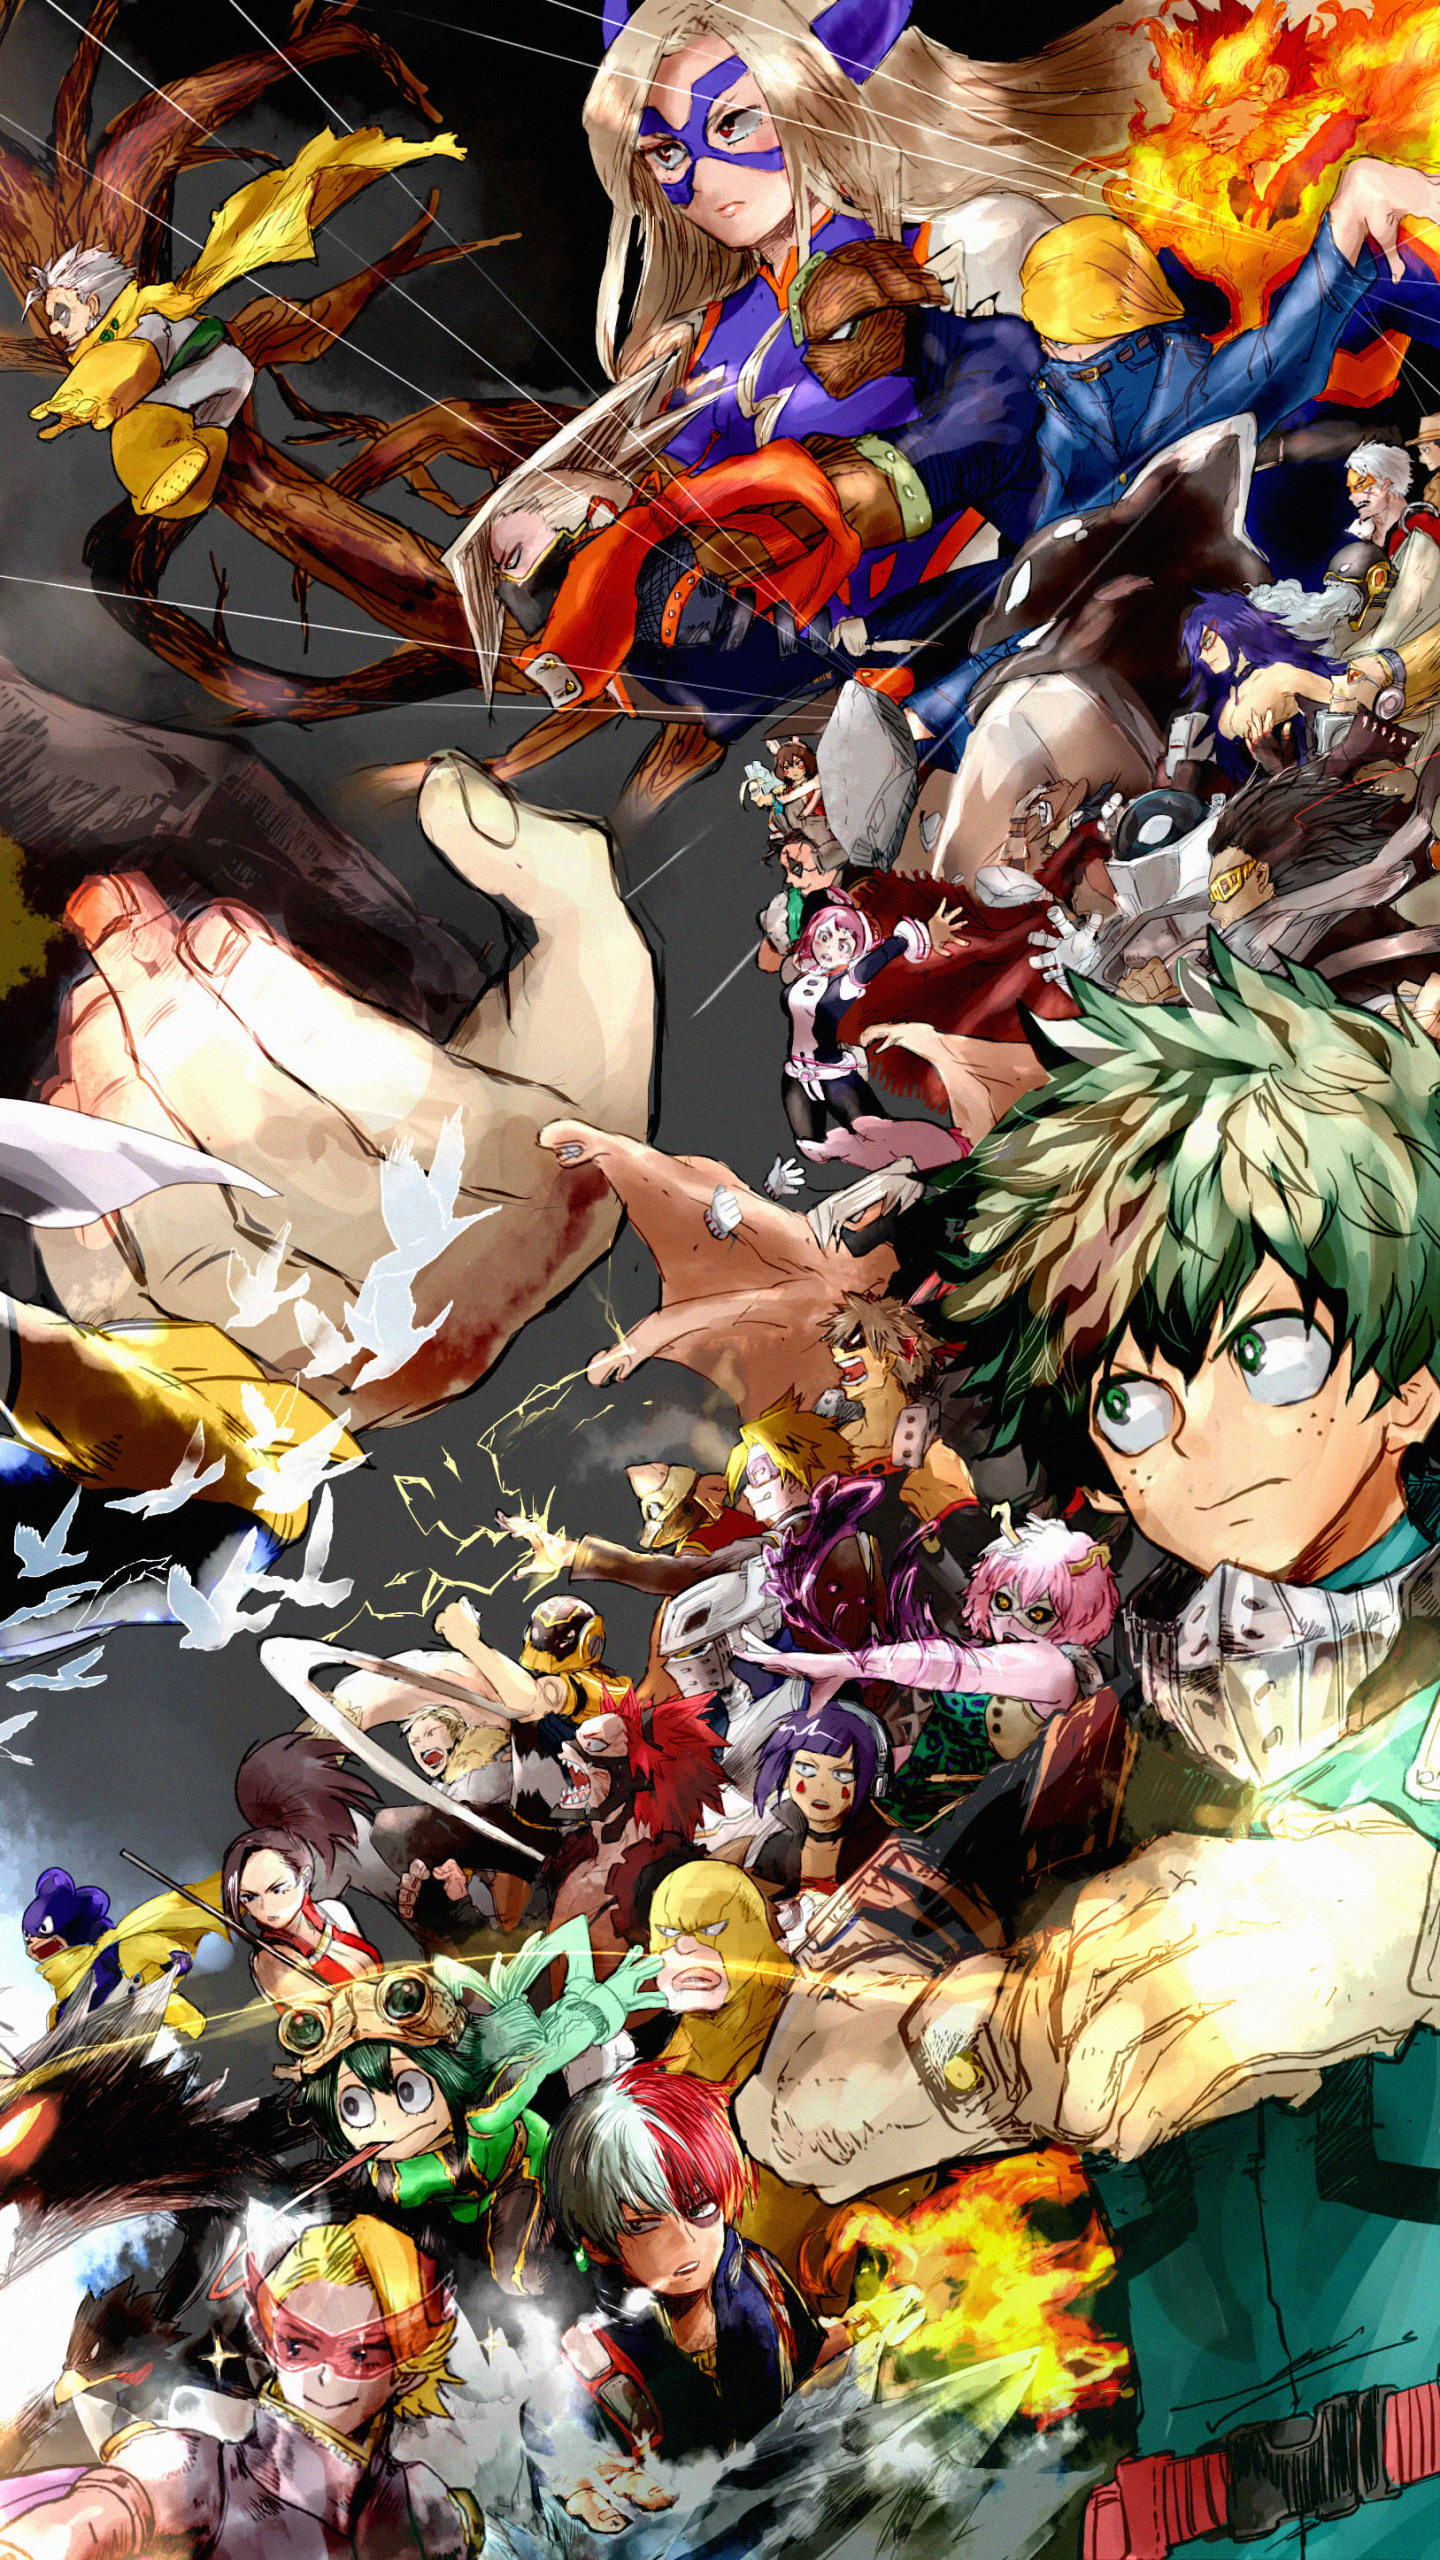 Wallpaper. Hero wallpaper, Anime wallpaper, Anime